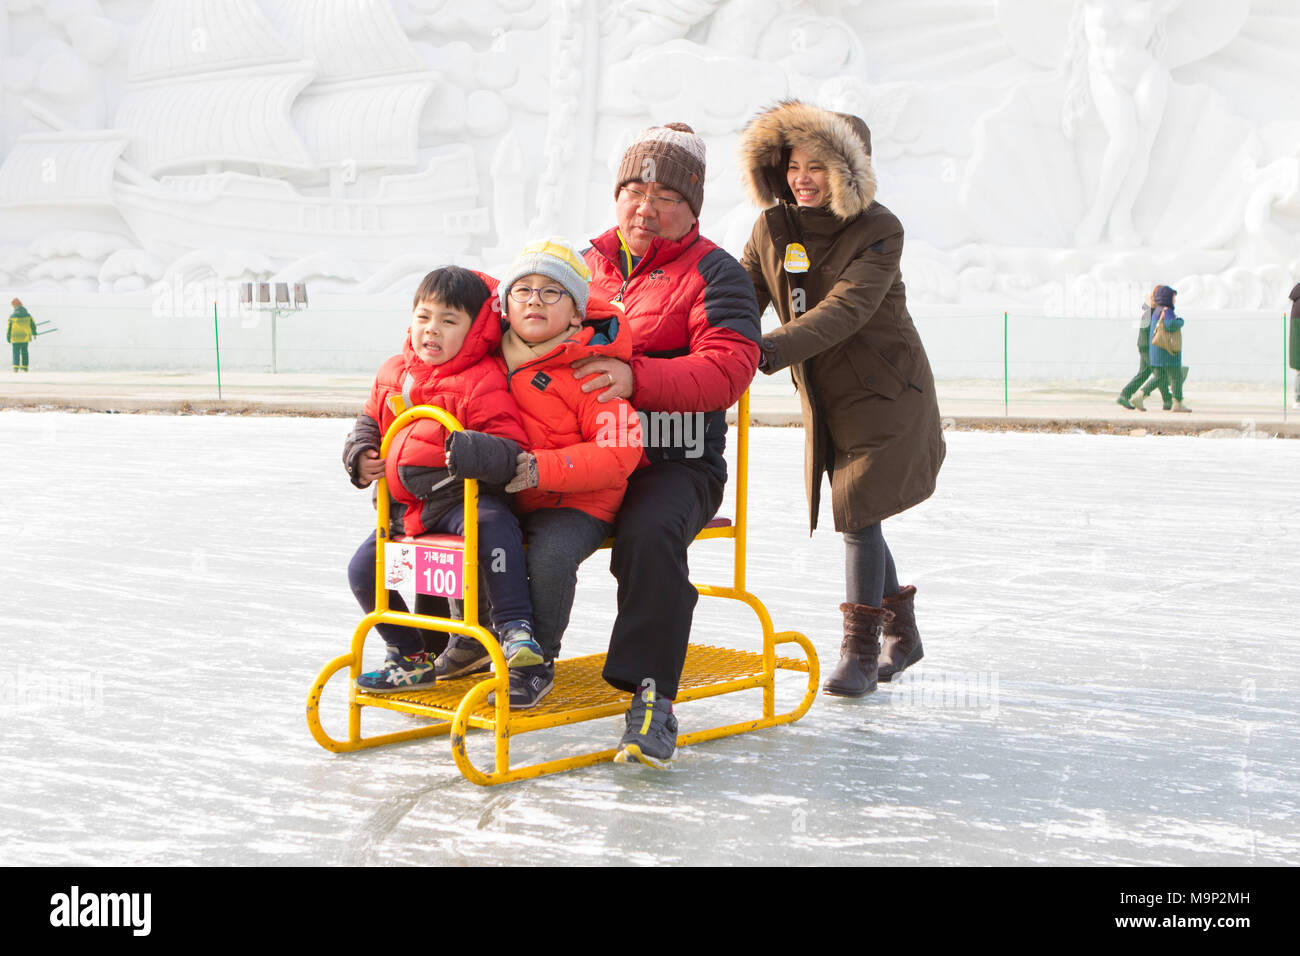 Une famille asiatique s'amuse sur un traîneau de groupe à une rivière gelée. L'Hwacheon Sancheoneo Ice Festival est une tradition pour les coréens. Chaque année en janvier les foules se rassemblent à la rivière gelée pour célébrer le froid et la neige de l'hiver. L'attraction principale est la pêche sur glace. Jeunes et vieux attendent patiemment sur un petit trou dans la glace pour une truite de mordre. Dans des tentes qu'ils peuvent laisser les poissons grillés après qu'ils soient mangés. Parmi les autres activités sont la luge et le patinage sur glace. La proximité de la région de Pyeongchang accueillera les Jeux Olympiques d'hiver en février 2018. Banque D'Images